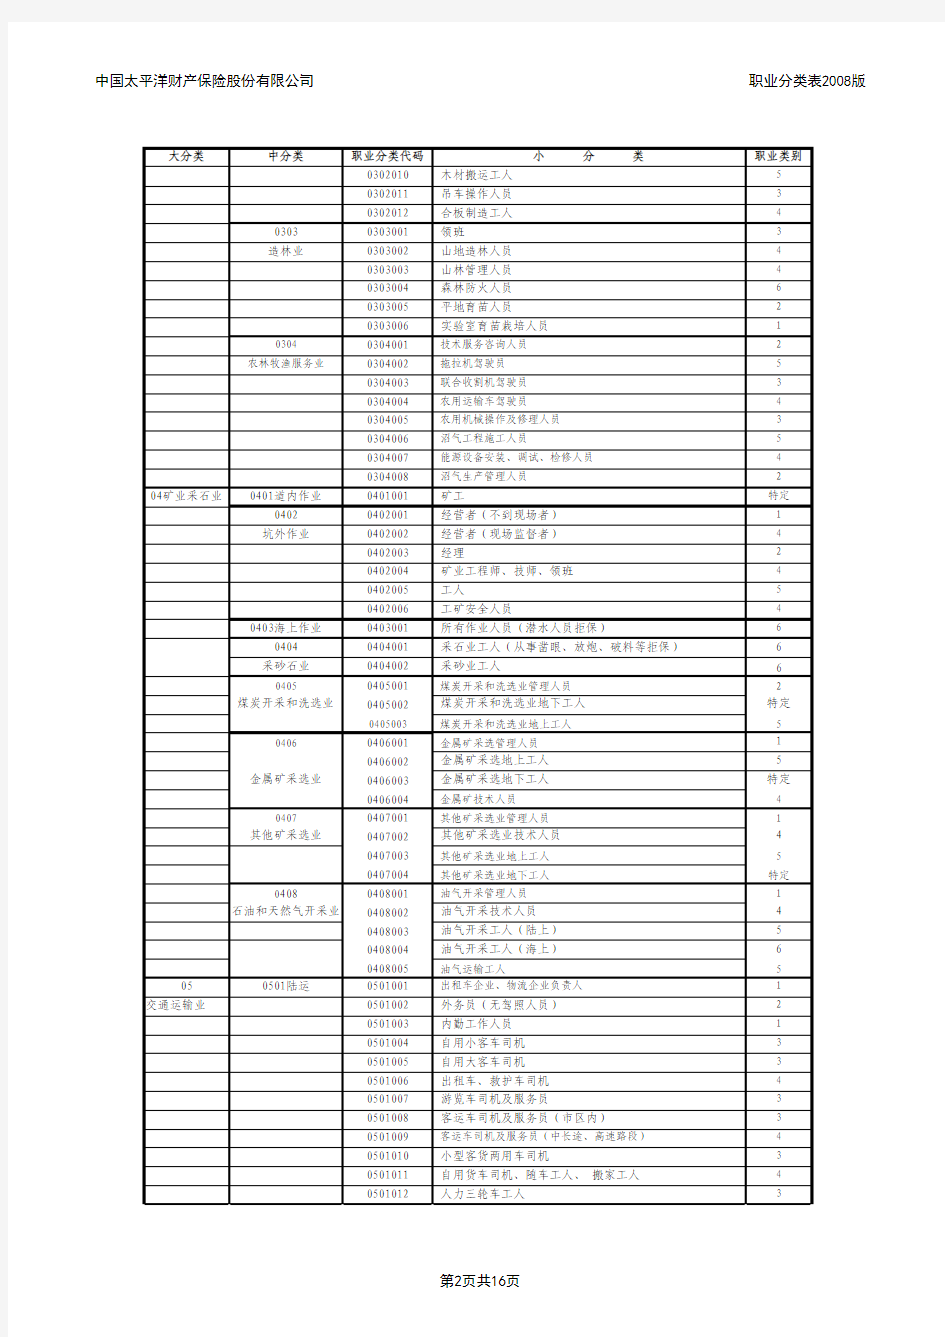 中国太平洋财产保险股份有限公司职业分类表